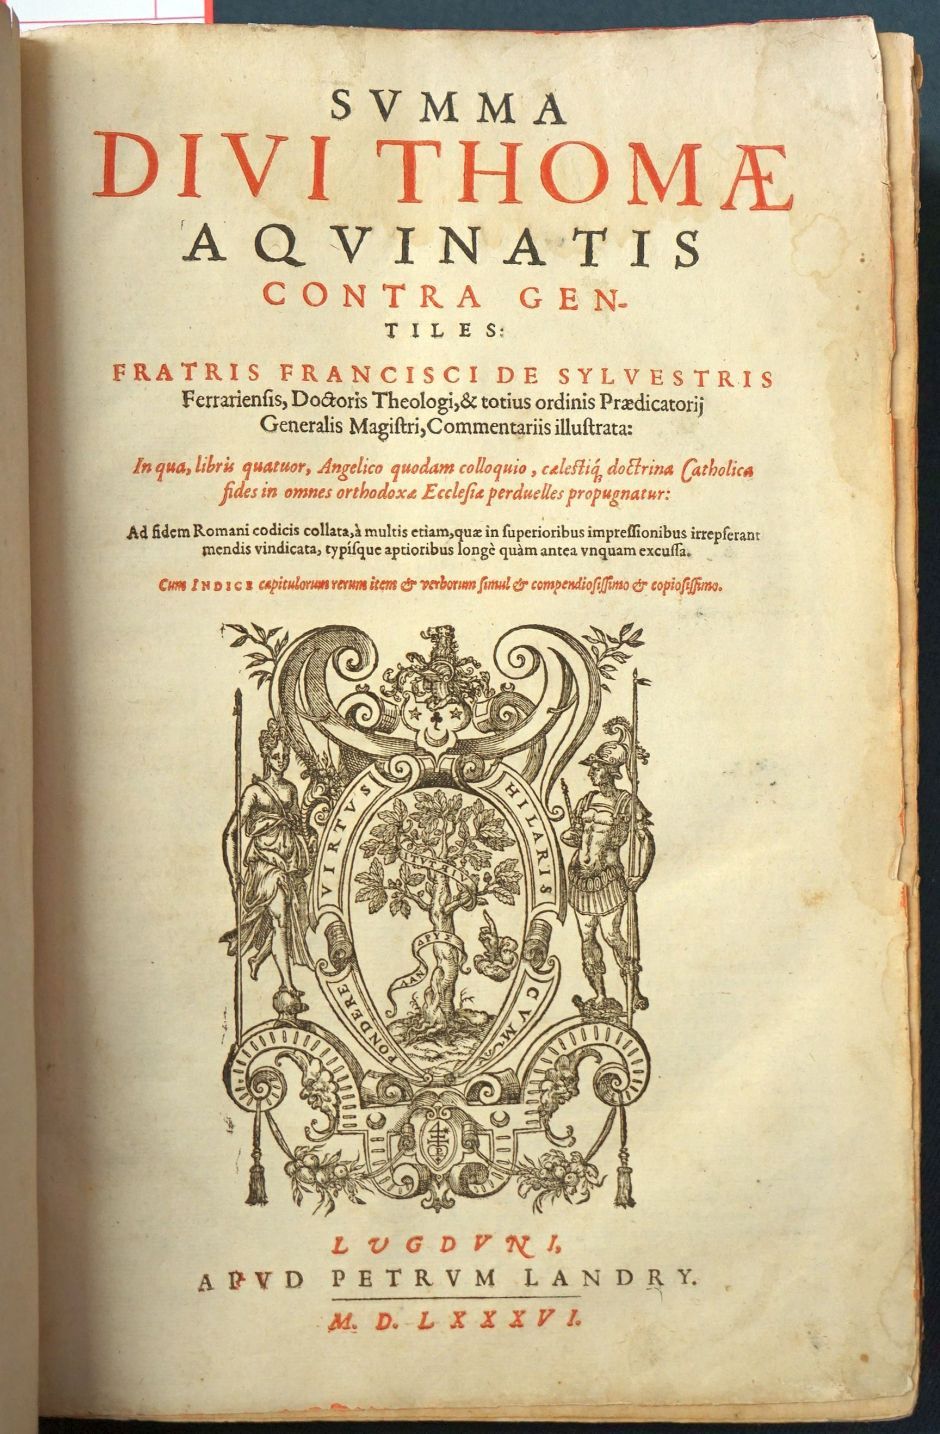 Lot 1203, Auction  115, Thomas von Aquin, Summa contra gentiles